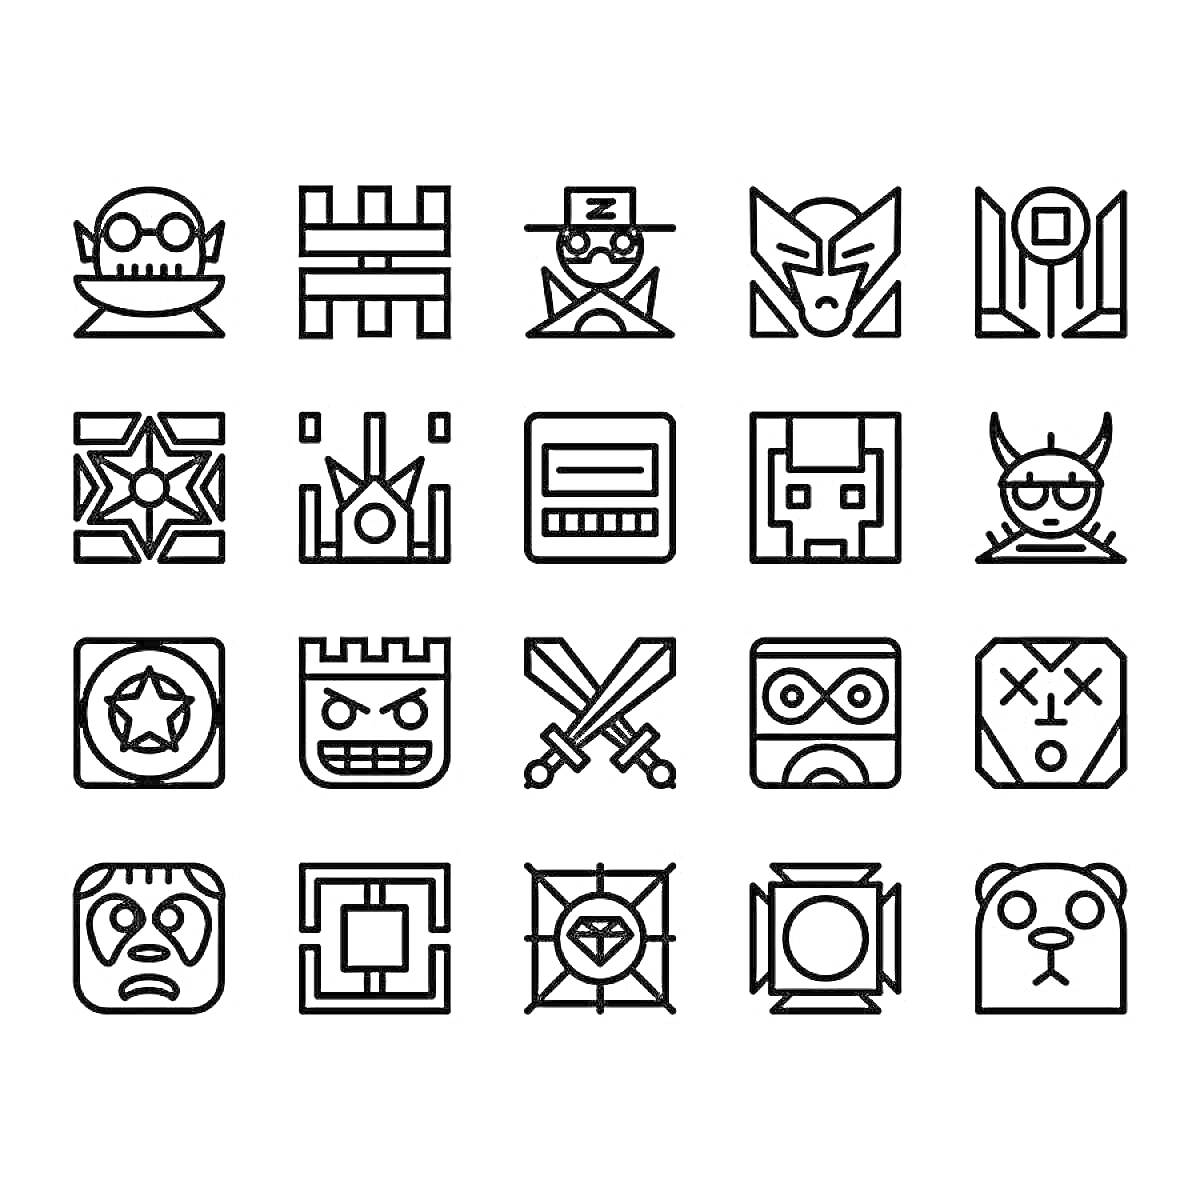 Раскраска Разнообразные аватары и символы из Geometry Dash: персонажи с головами в касках, масках, шлемах и очках, символы с мечами, звездами и различными геометрическими формами - все элементы черно-белые и стилизованы